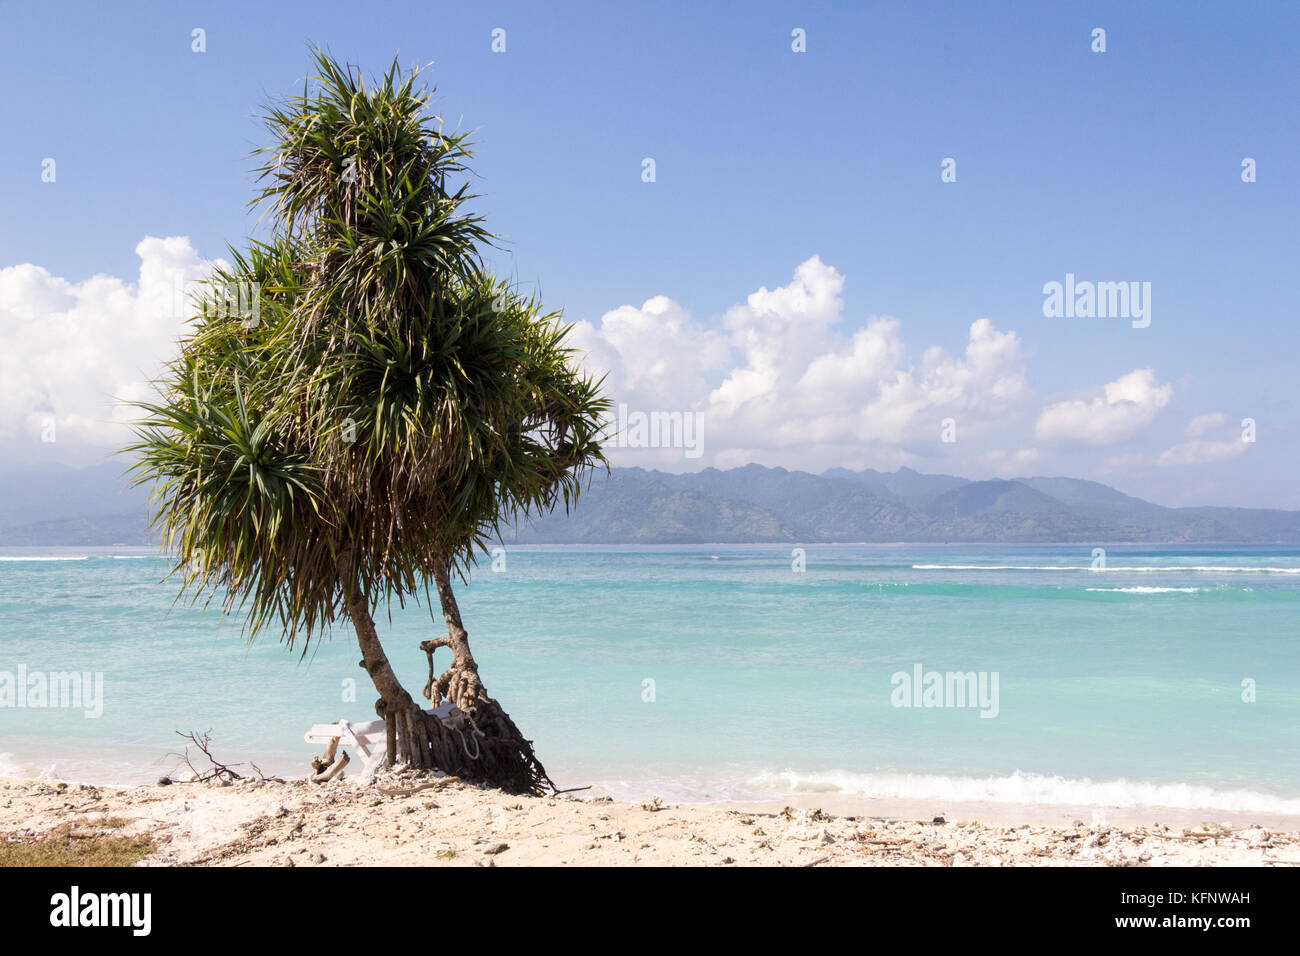 Pandanus tree on white sand beach, Gili Trawangan, Indonesia Stock Photo